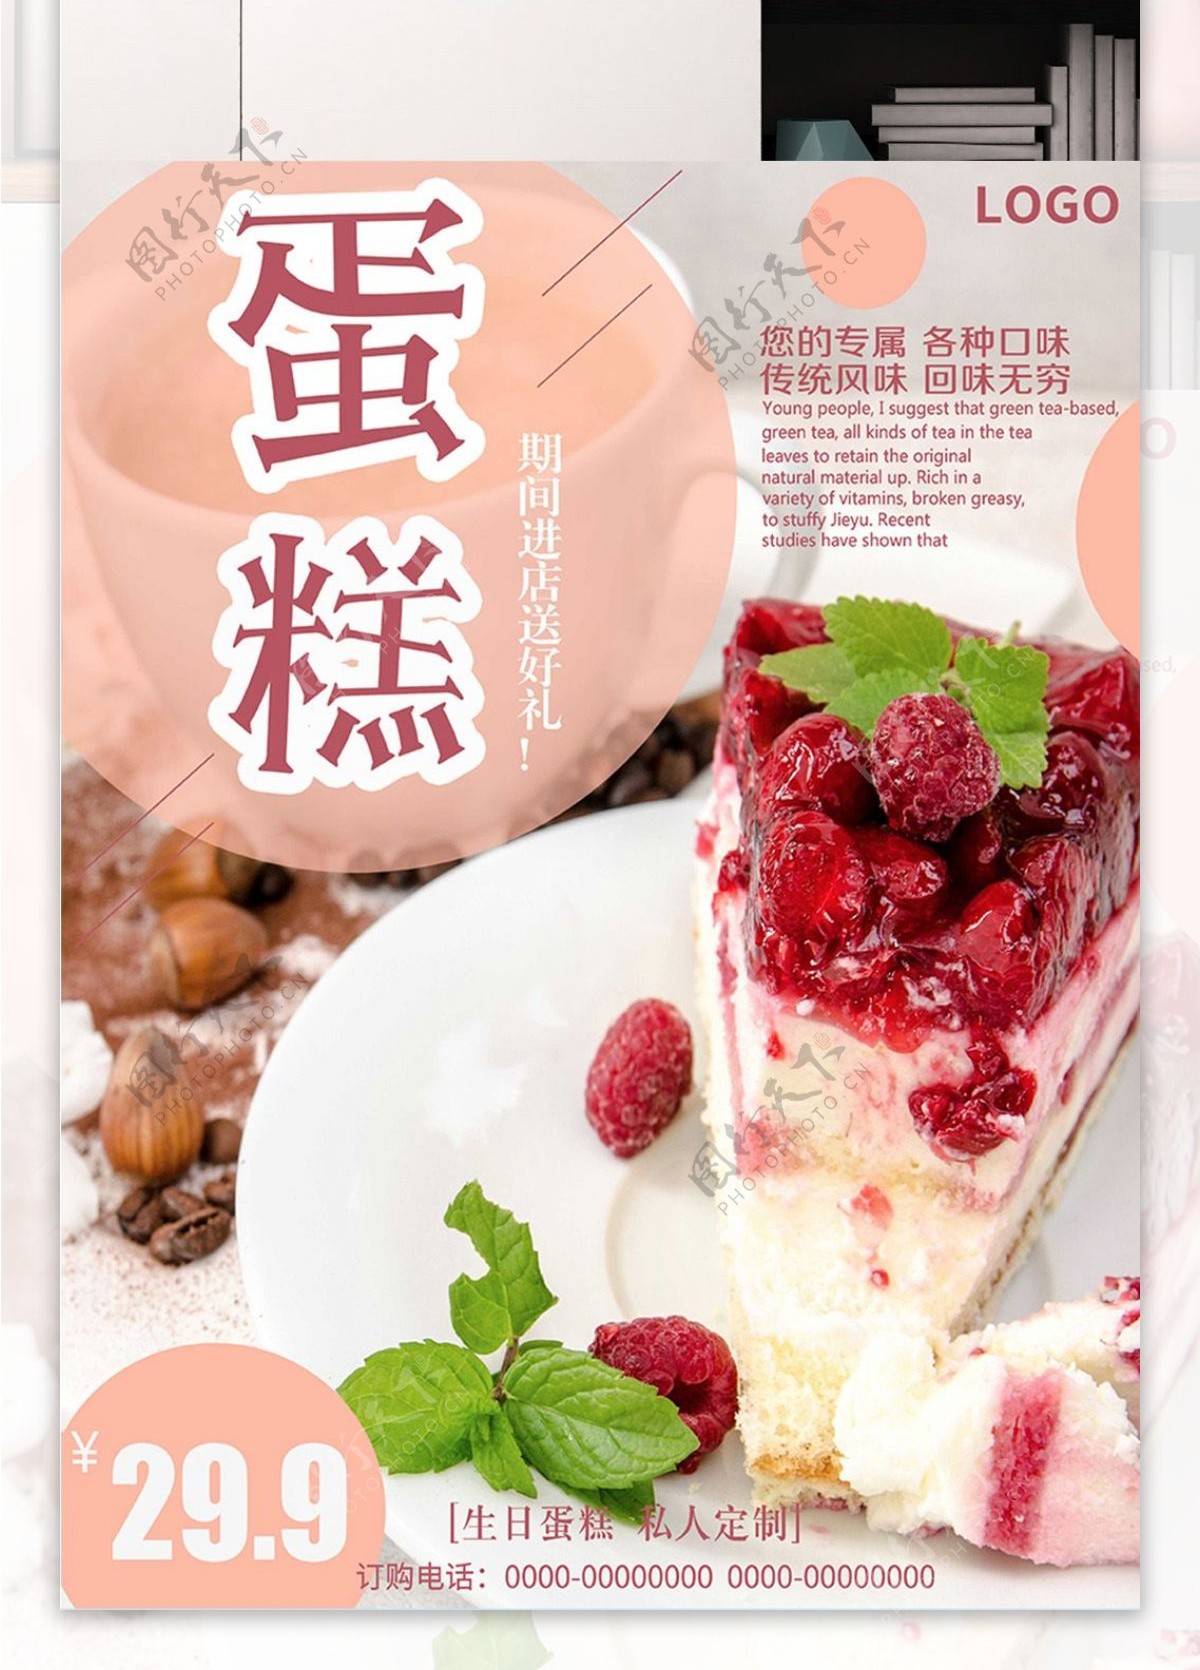 白色背景简约大气美味蛋糕宣传海报